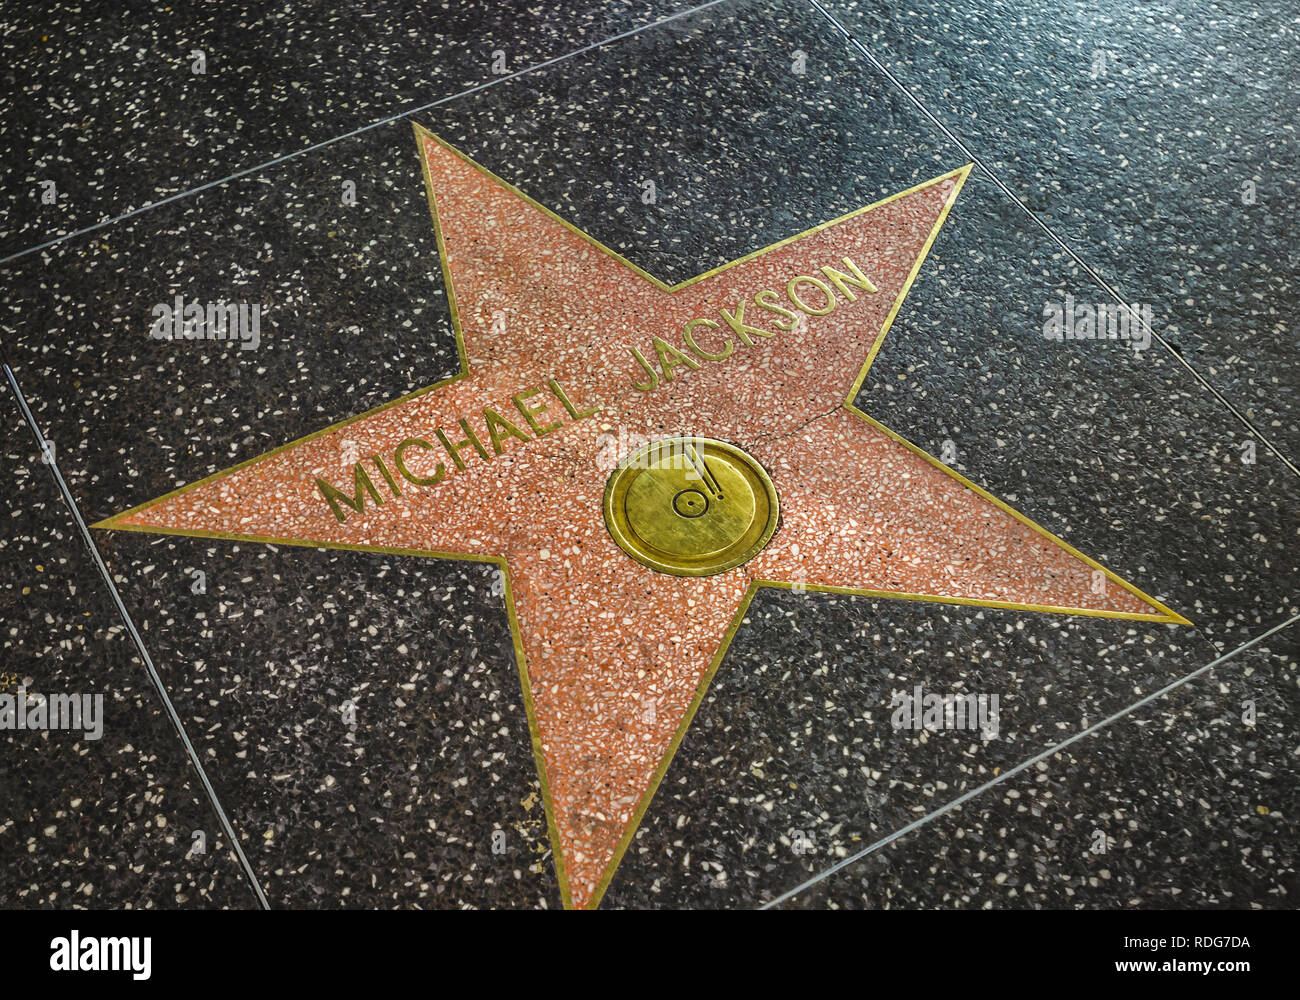 Los Angeles, California, Stati Uniti d'America - 09 Giugno 2011: nome del pop star Michael Jackson sulla Hollywood Walk of Fame. Jackson star, impostare nel 1984. Foto Stock